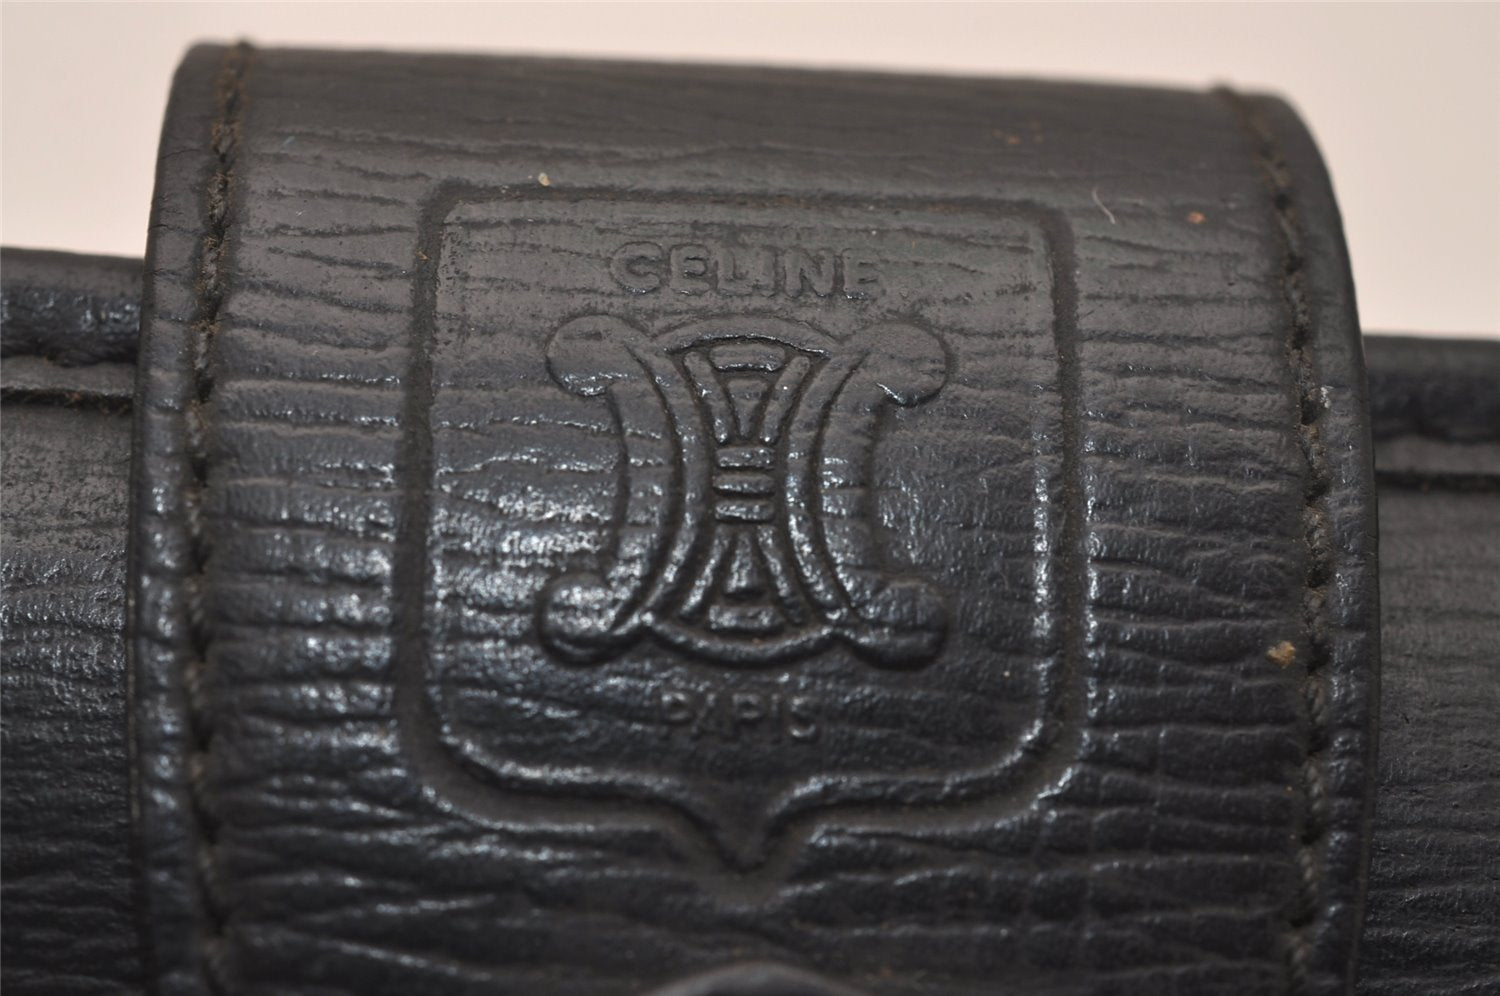 Authentic CELINE Vintage Clutch Hand Bag Purse Leather Black 8465J